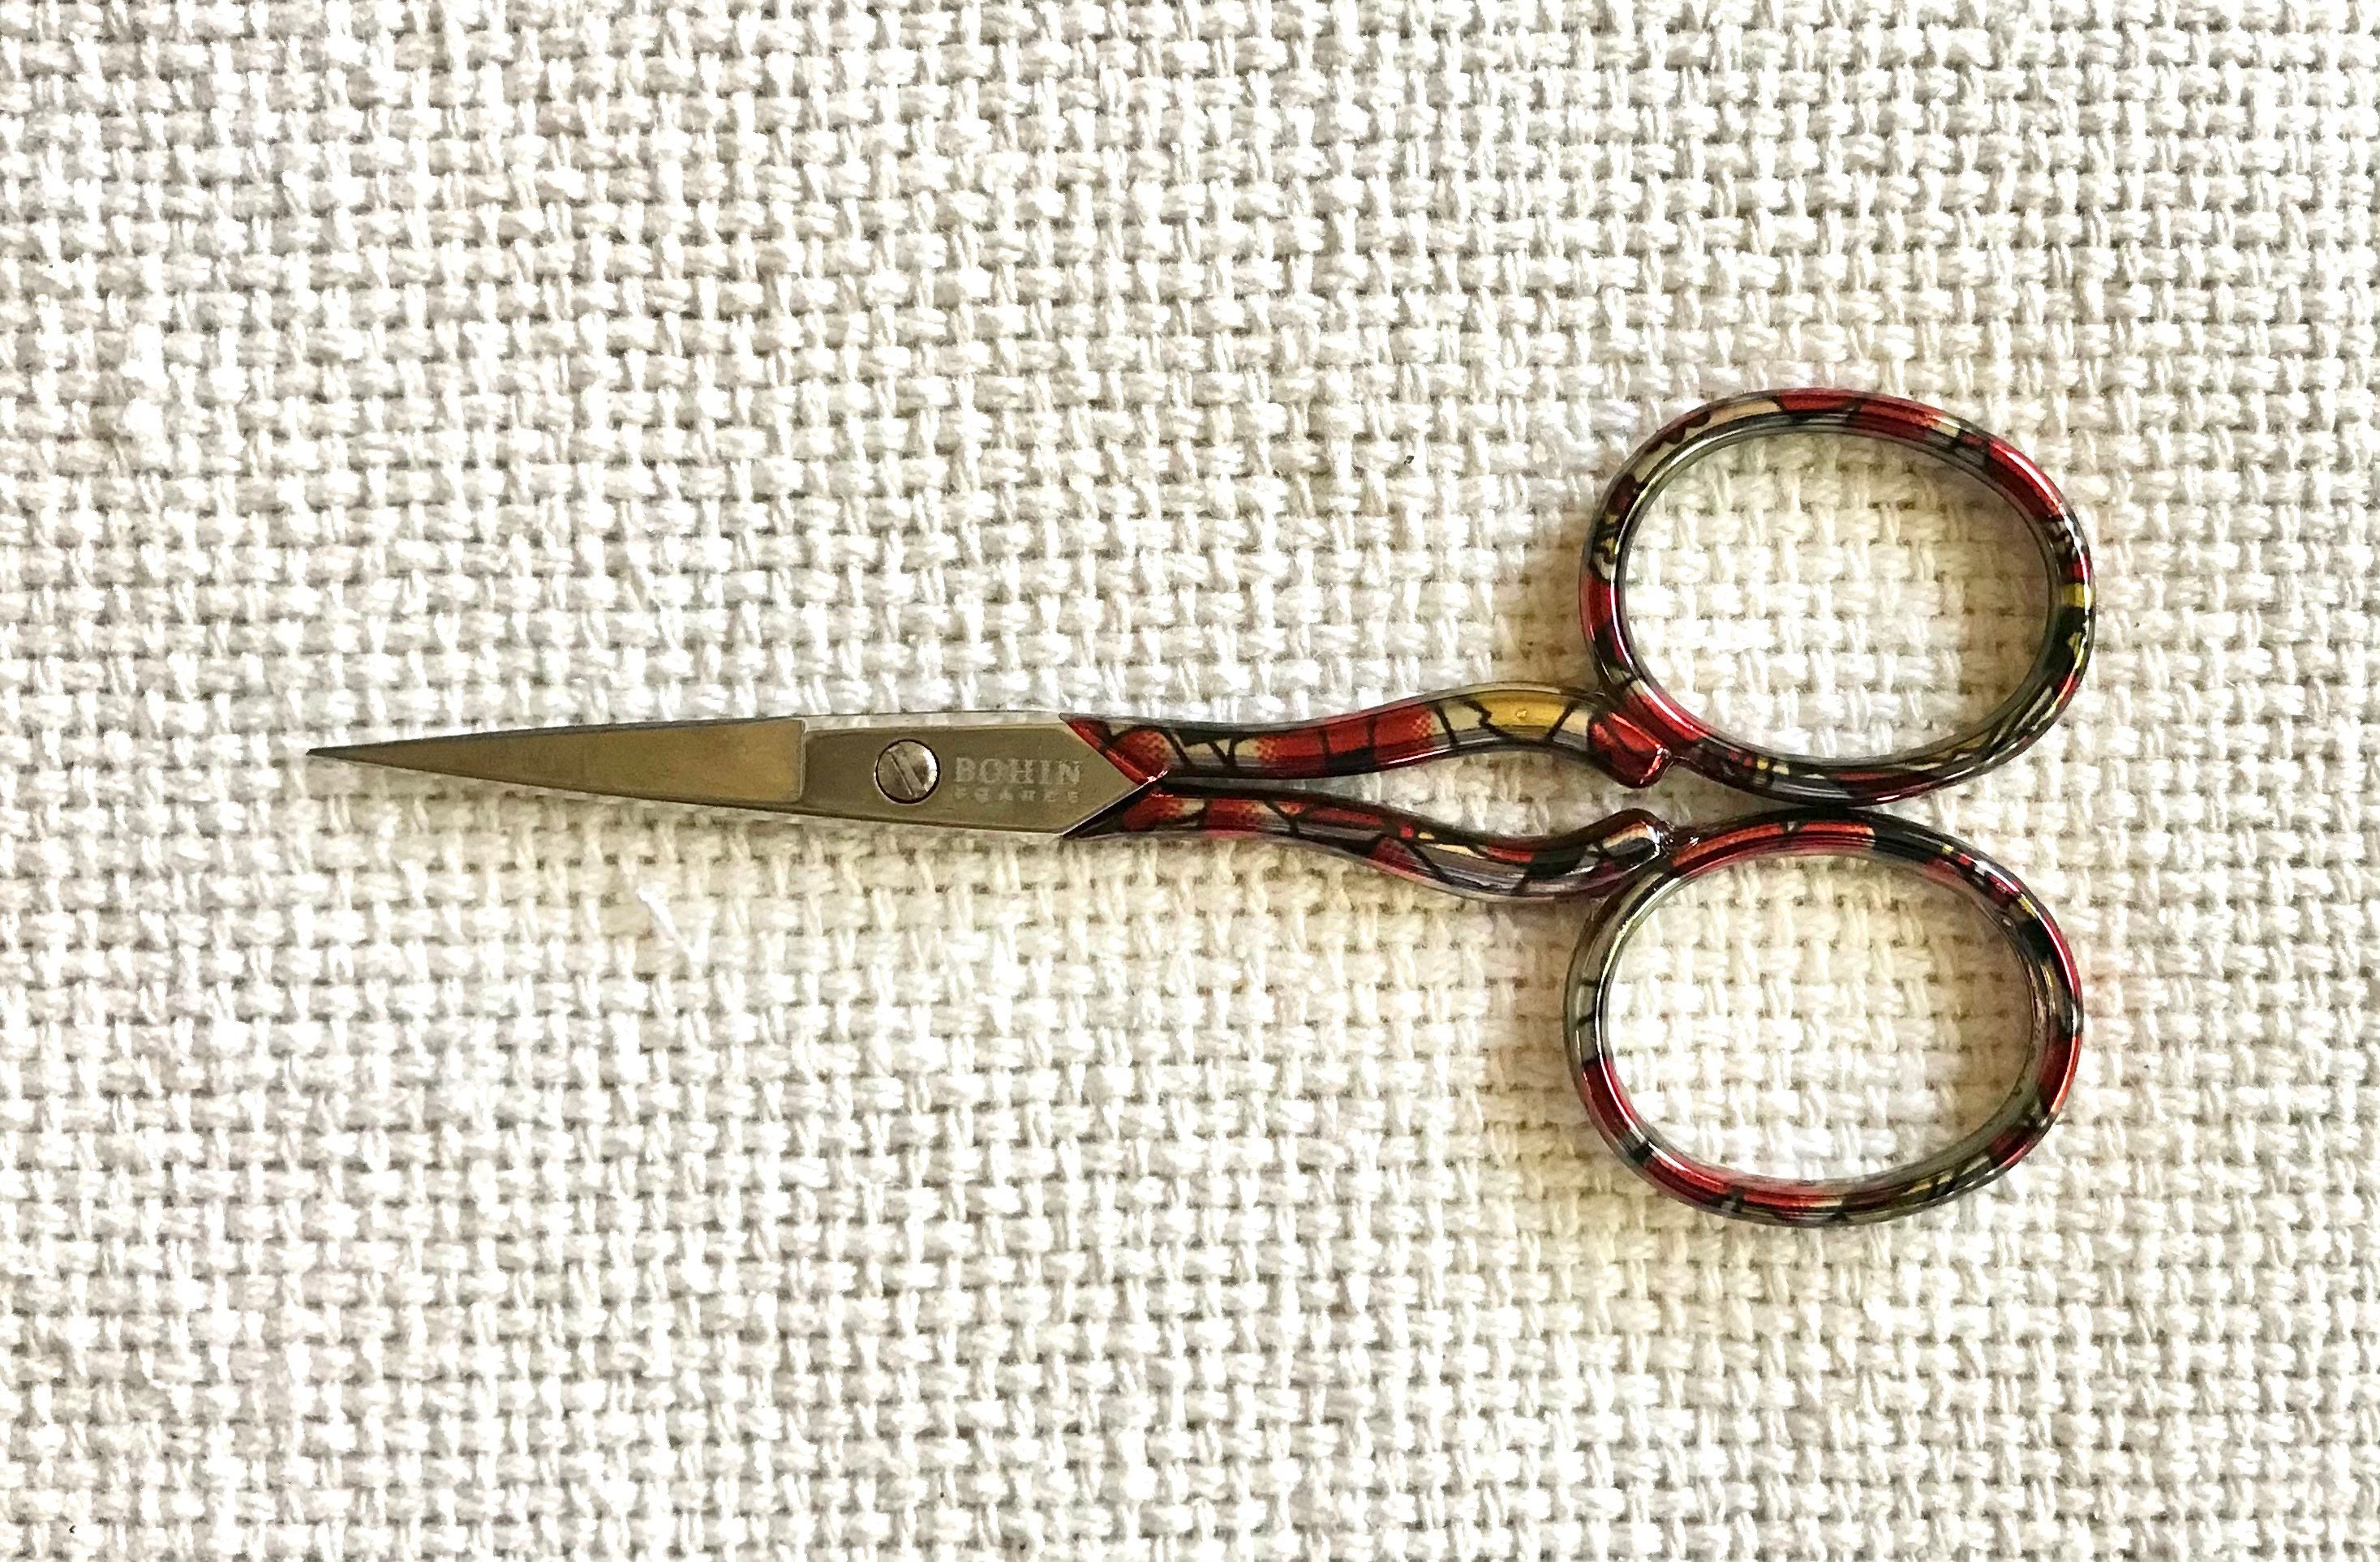 Bohin Embroidery Scissors